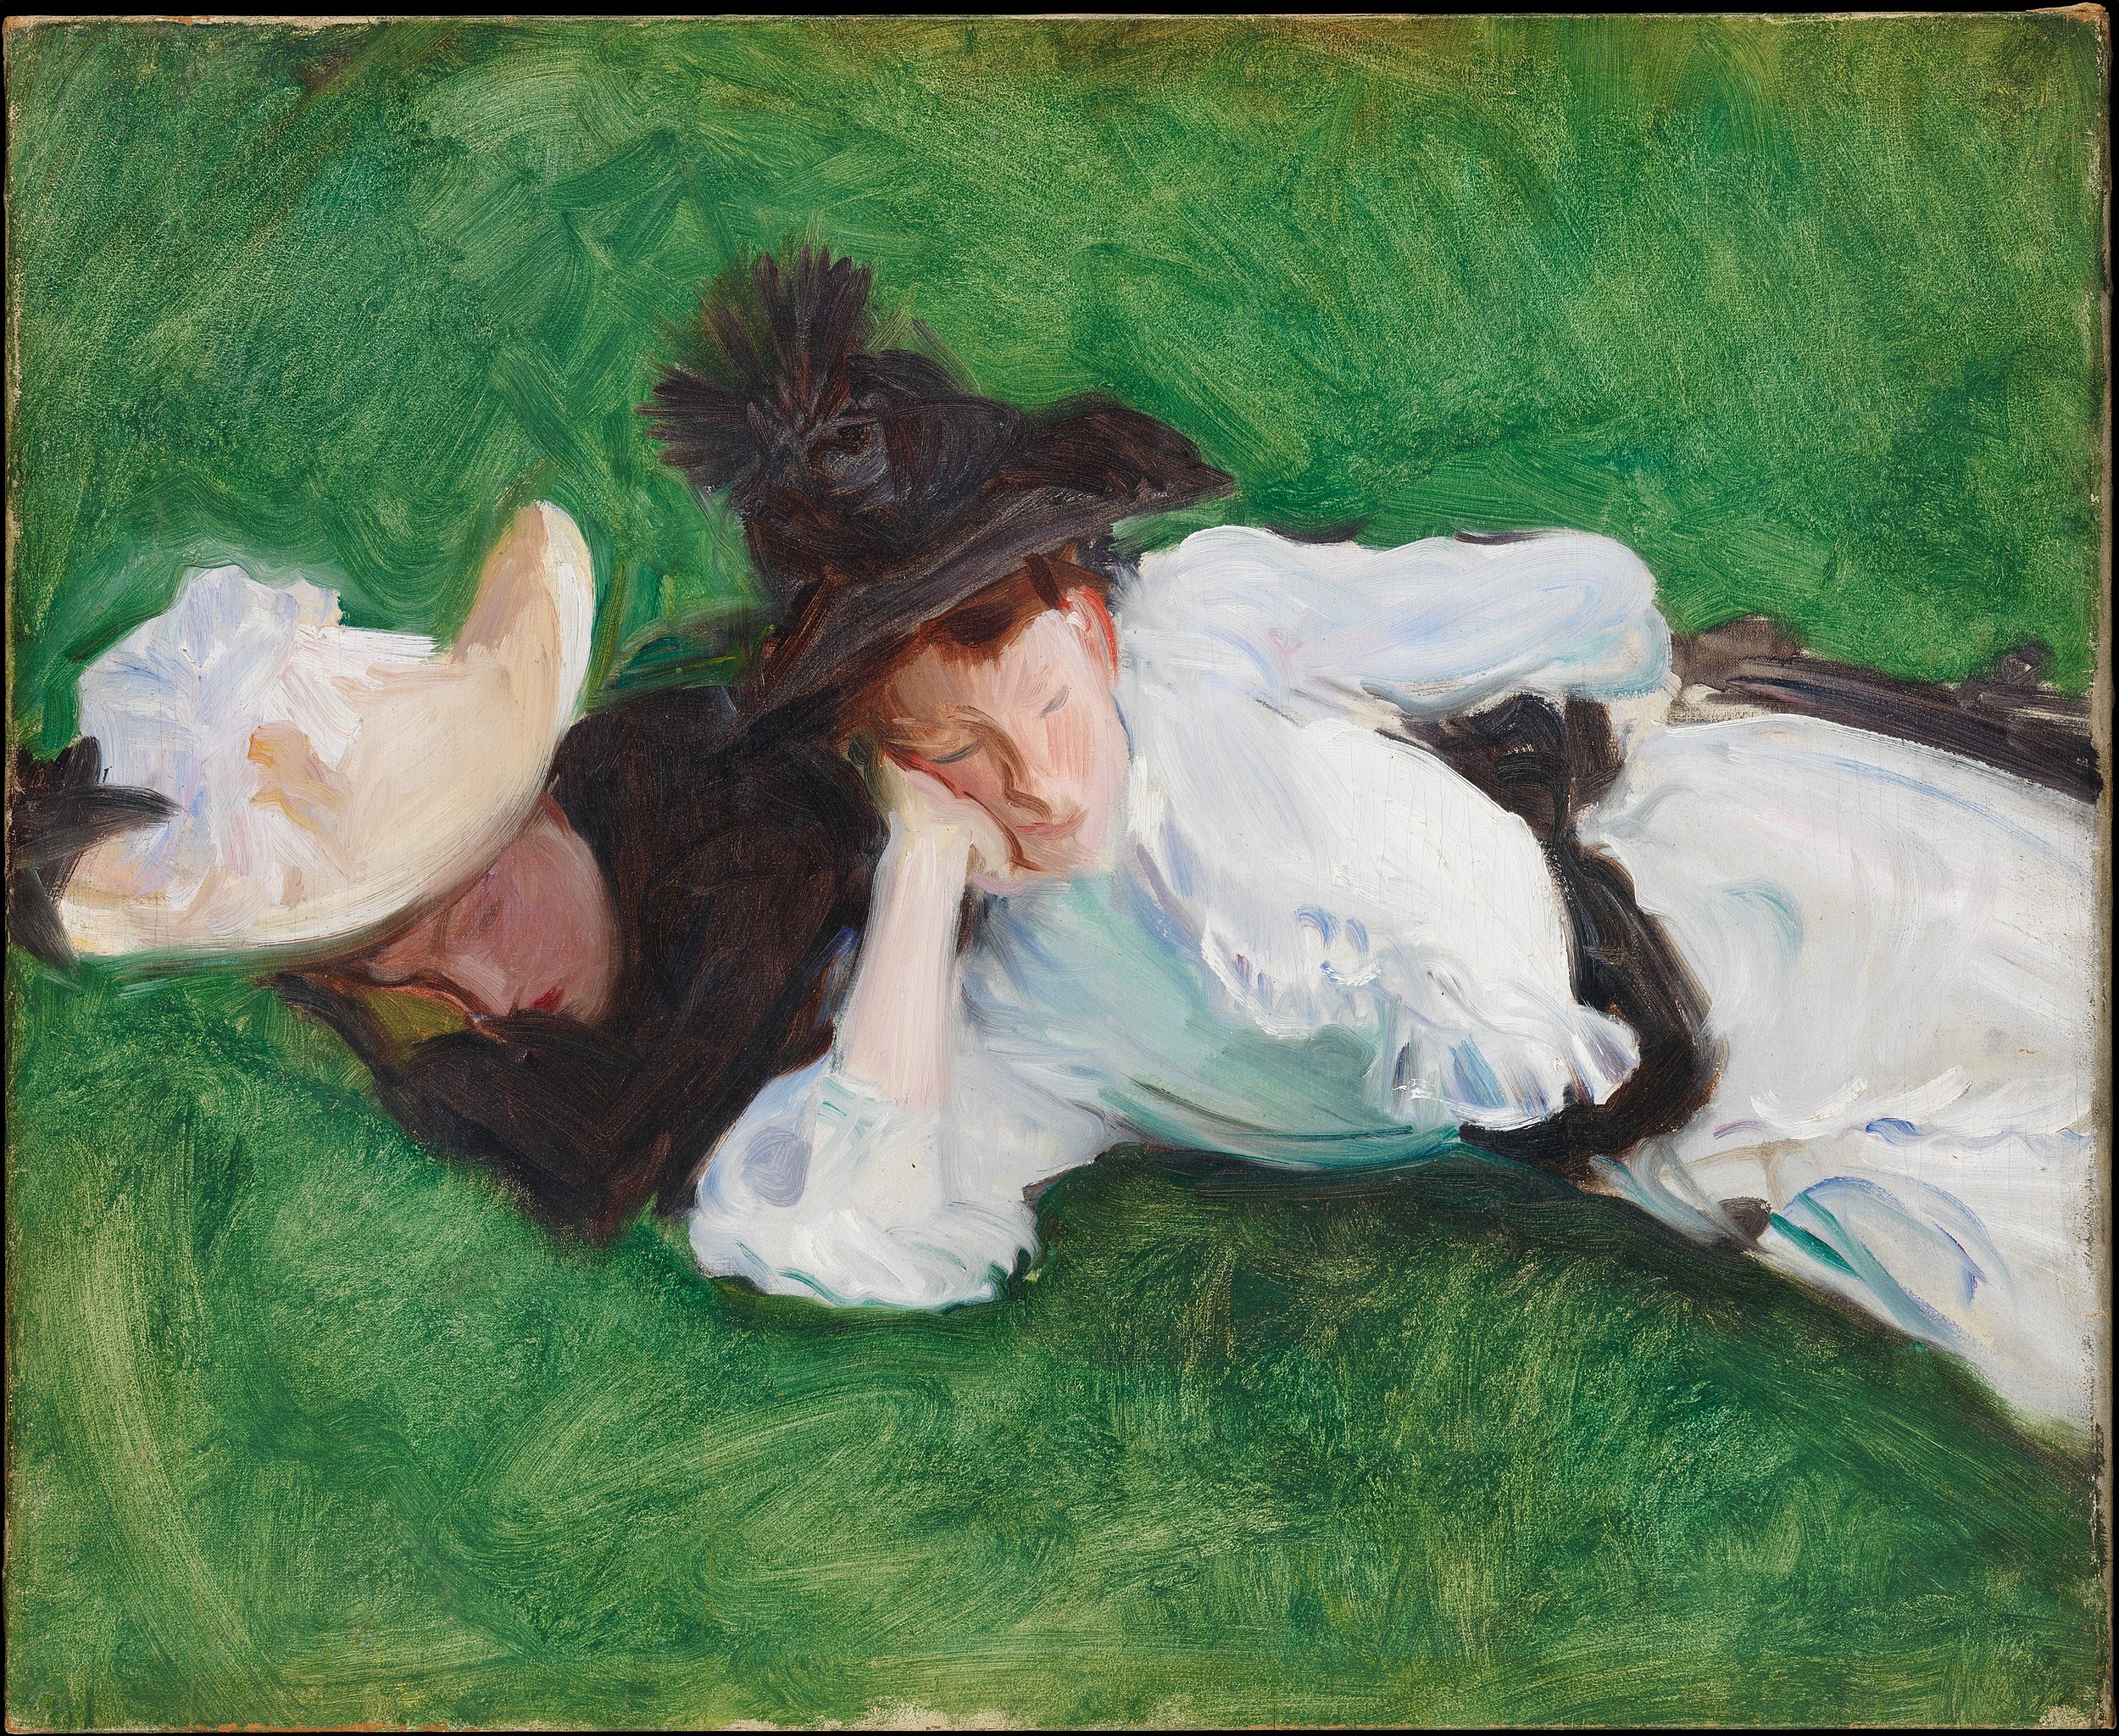 Dwie dziewczyny na trawniku by John Singer Sargent - ok. 1889 - 53,7 x 64,1 cm 